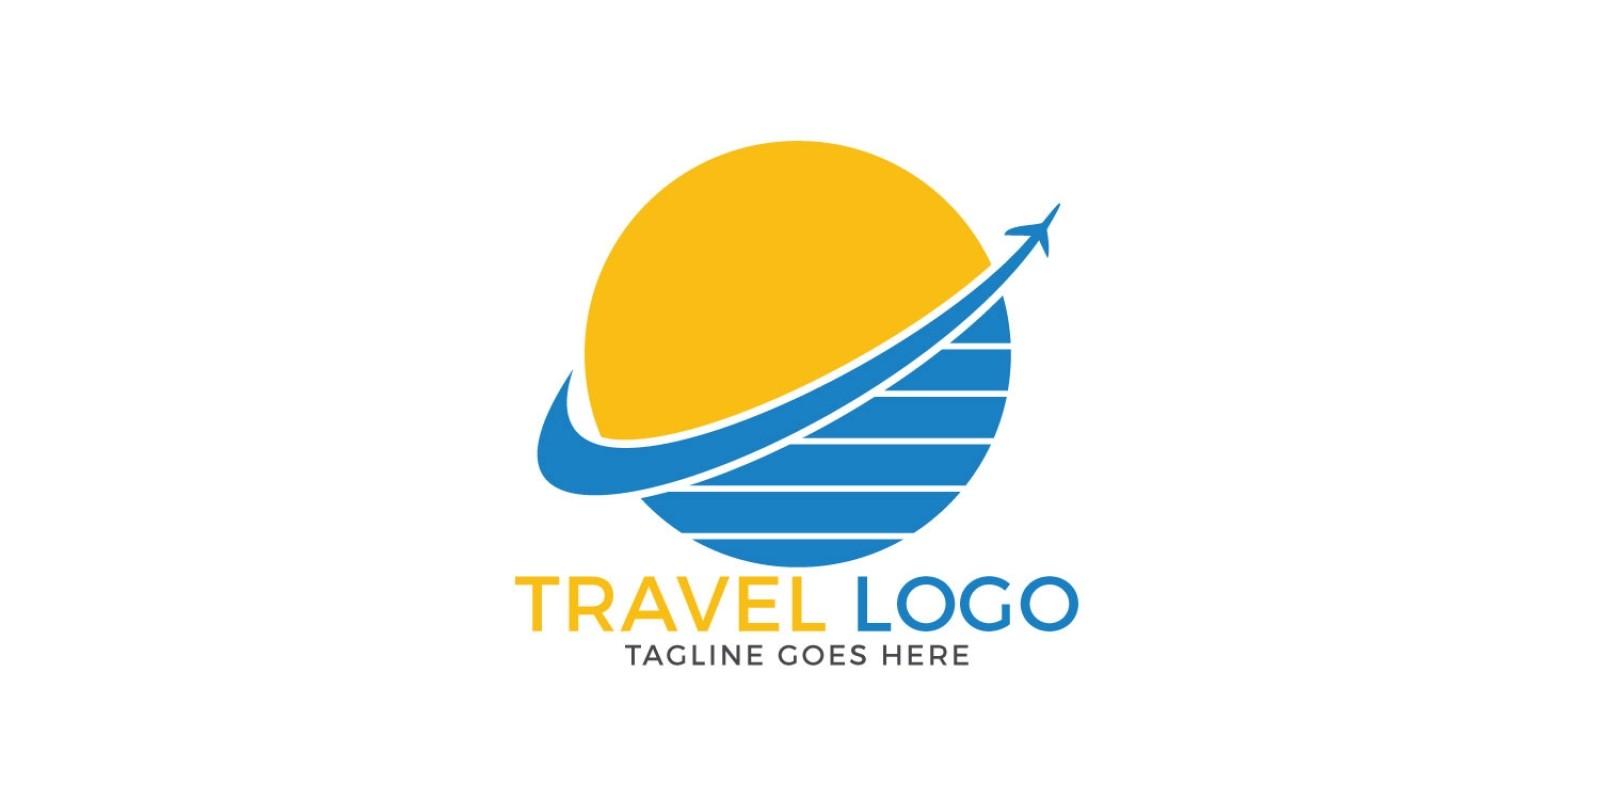 Hình ảnh logo công ty du lịch Travel Logo